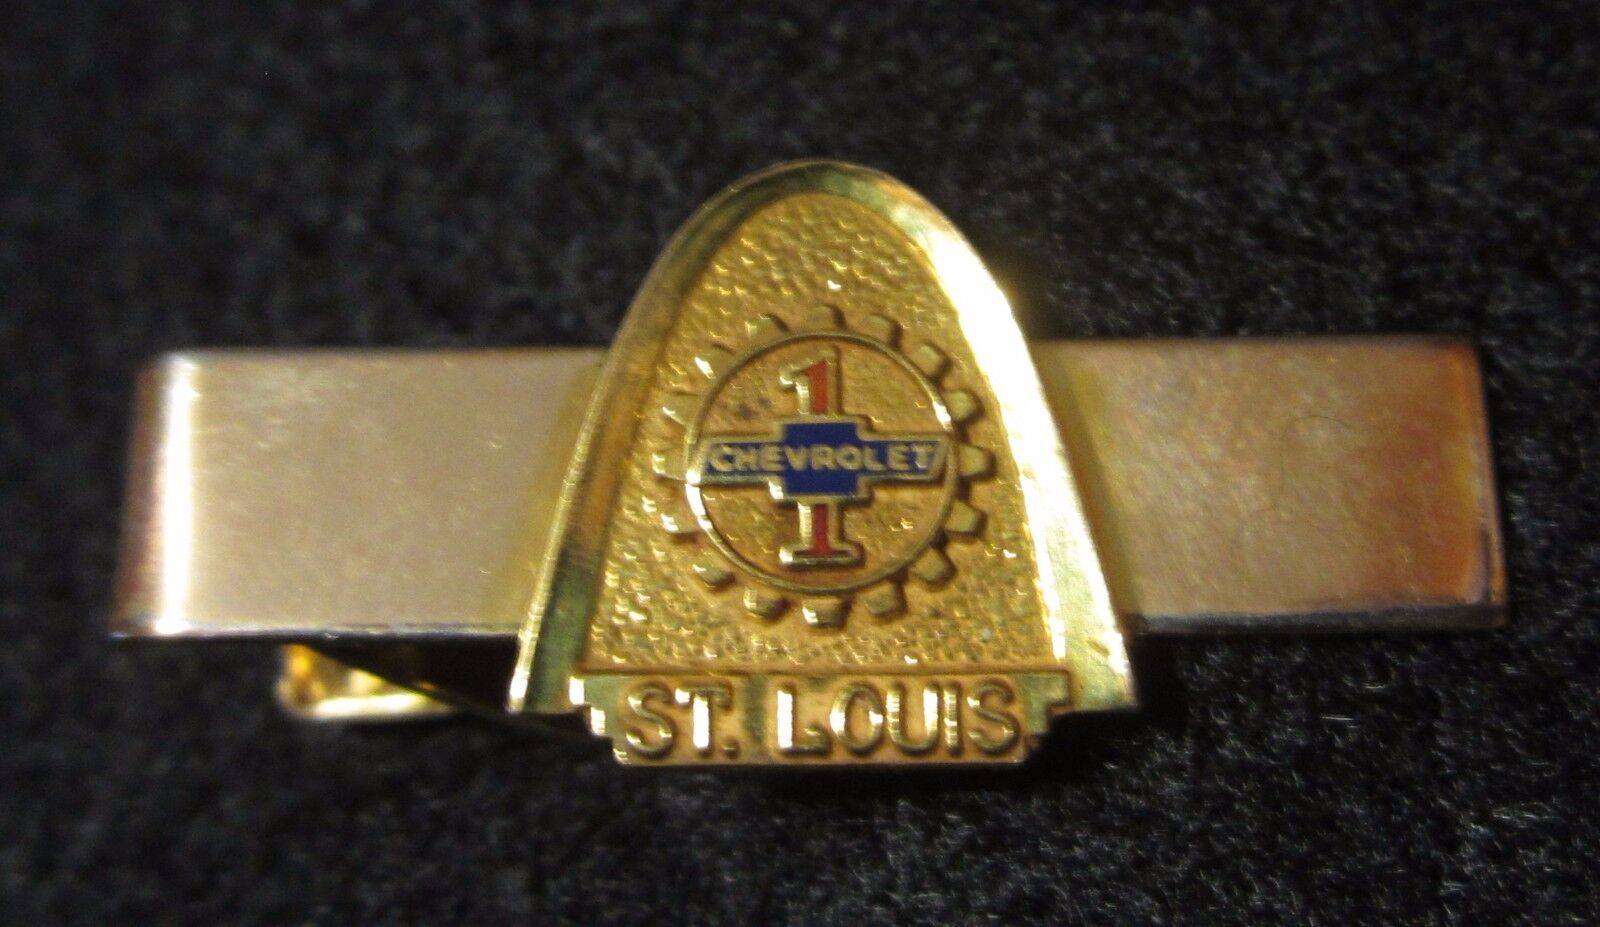 Chevrolet St Louis Automotive Plant Tie Bar 1/20 12K Gold Filled